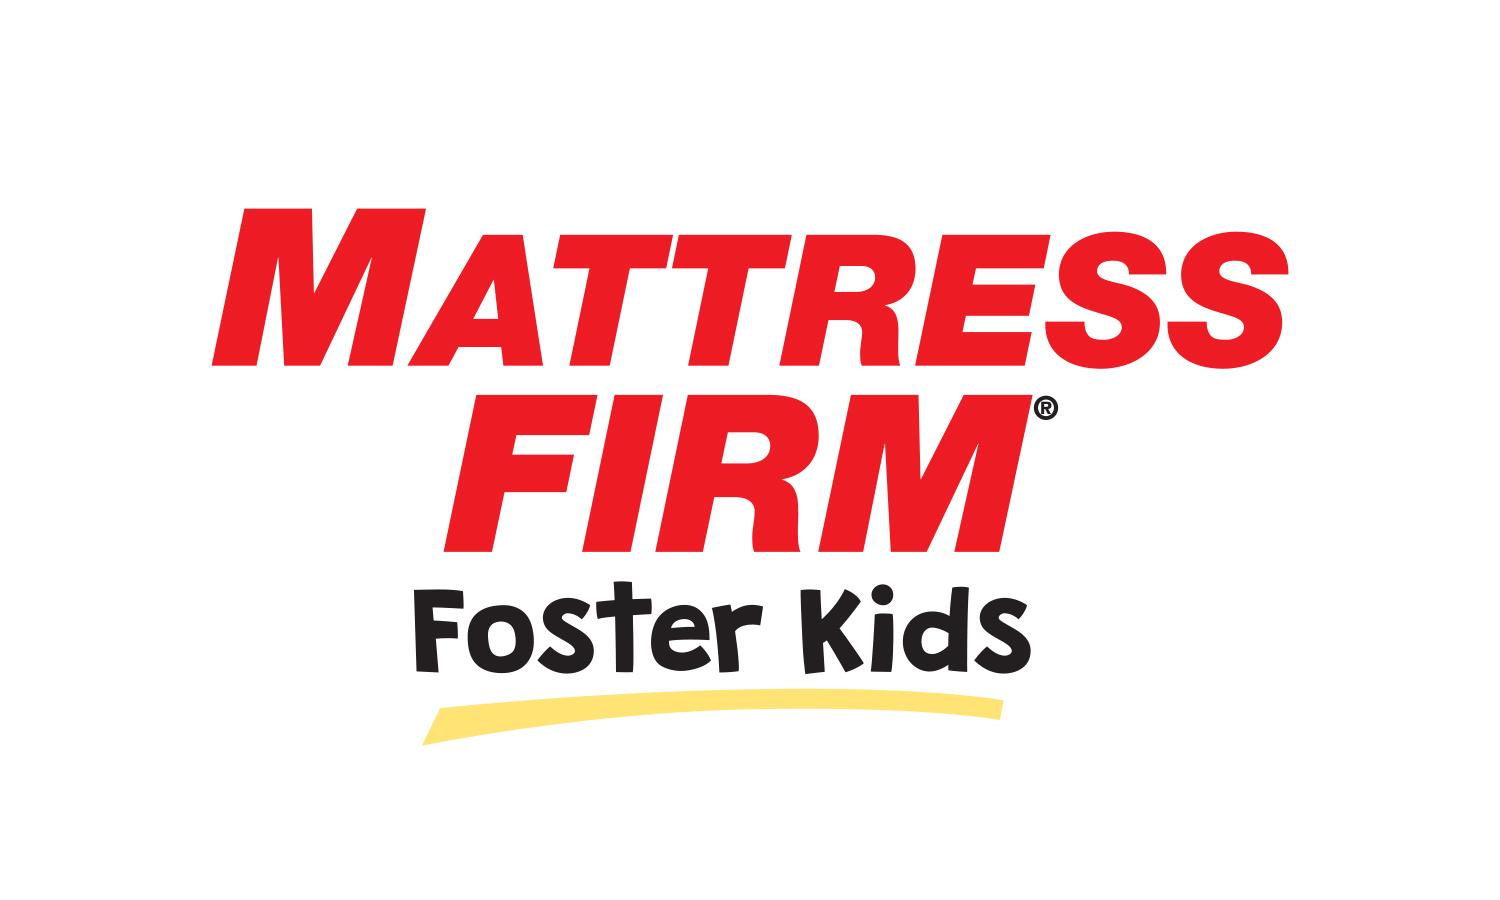 mattress firm foster child program